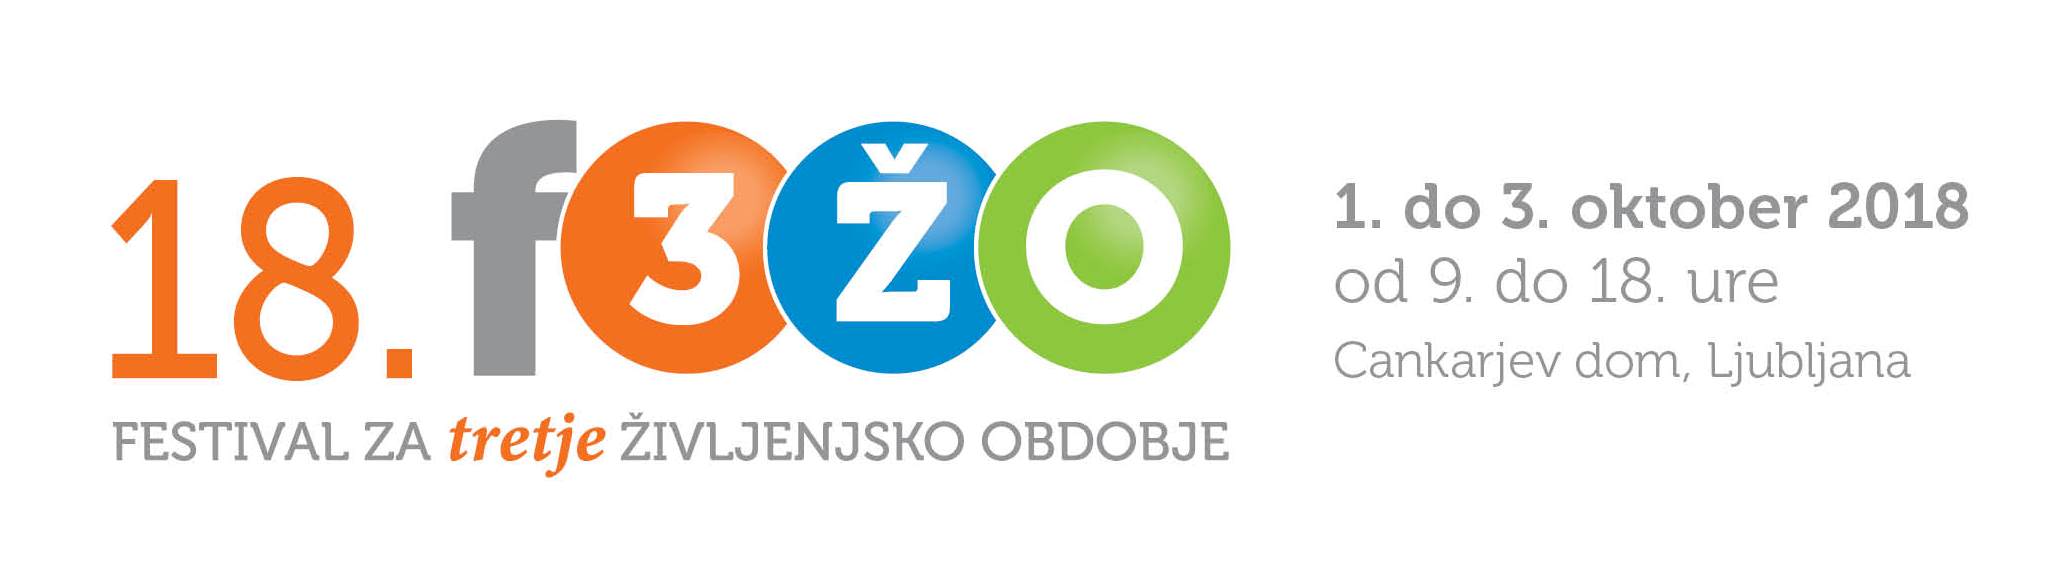 F3ZO18 logo postavitve 20170222 2